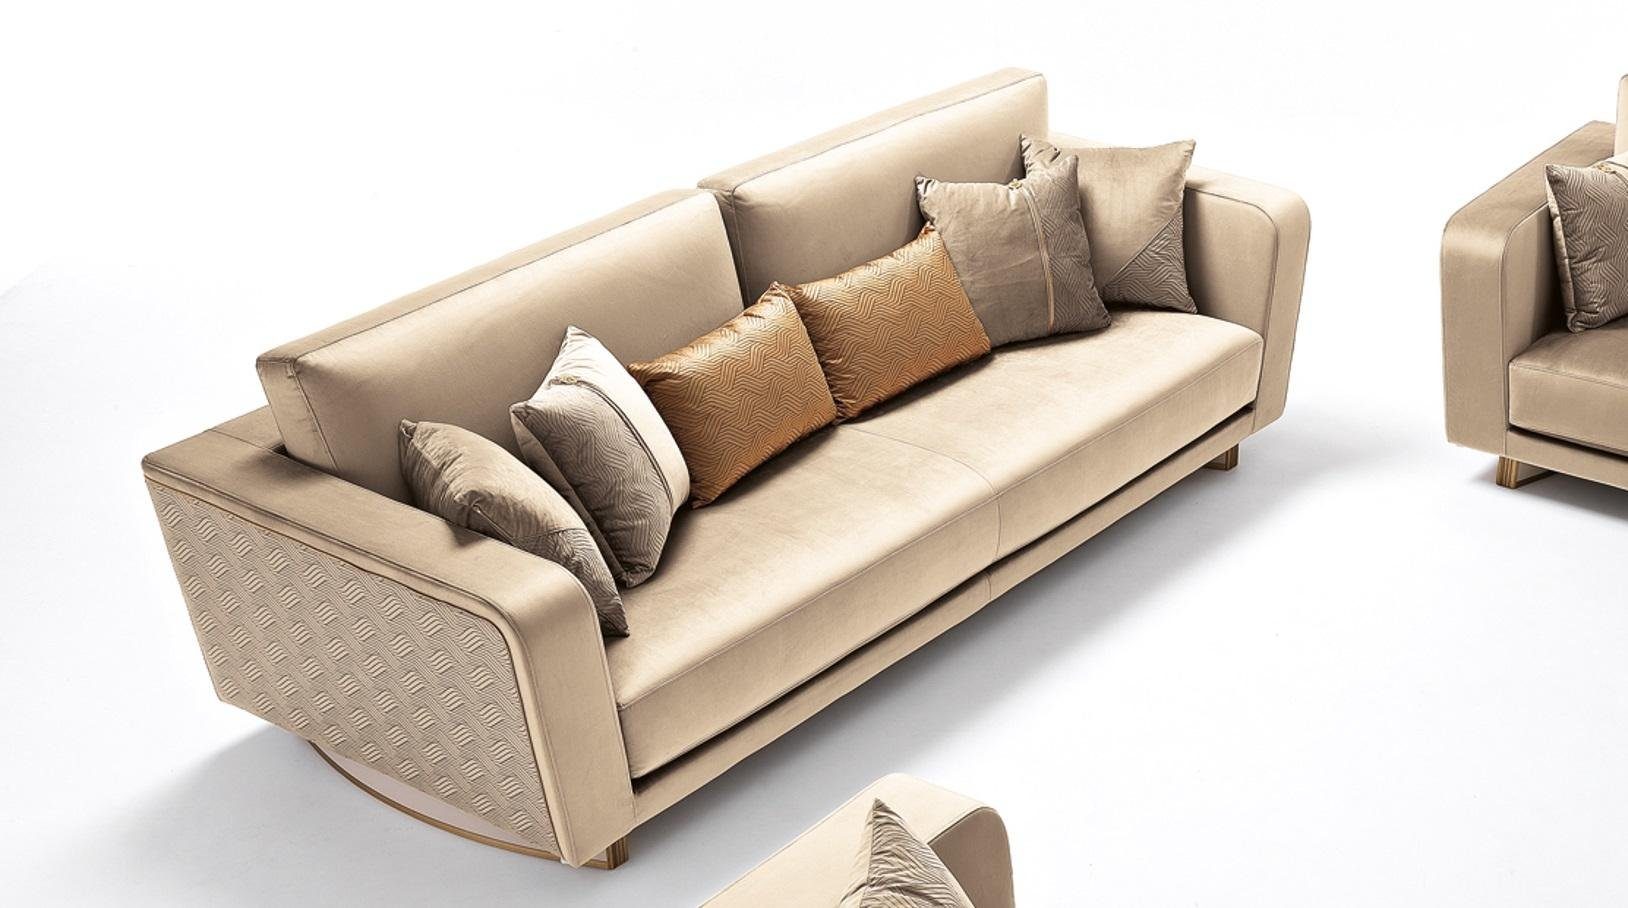 JVmoebel Sofa Design Dreisitzer Couch Polster Sofa Modern 3er Sofa, Made in Europe